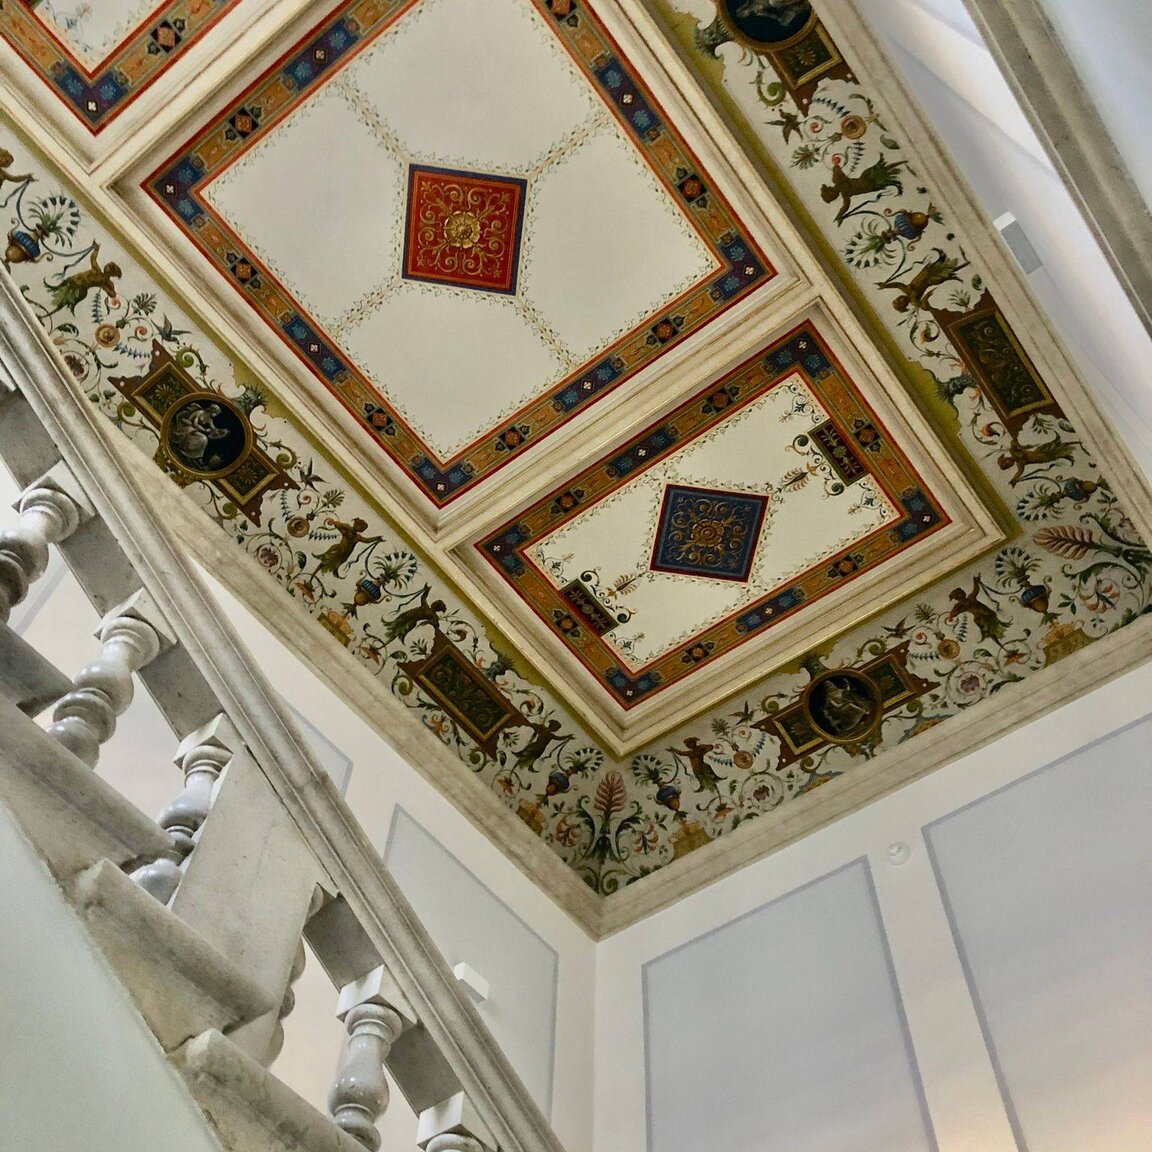 Le plafond du palais